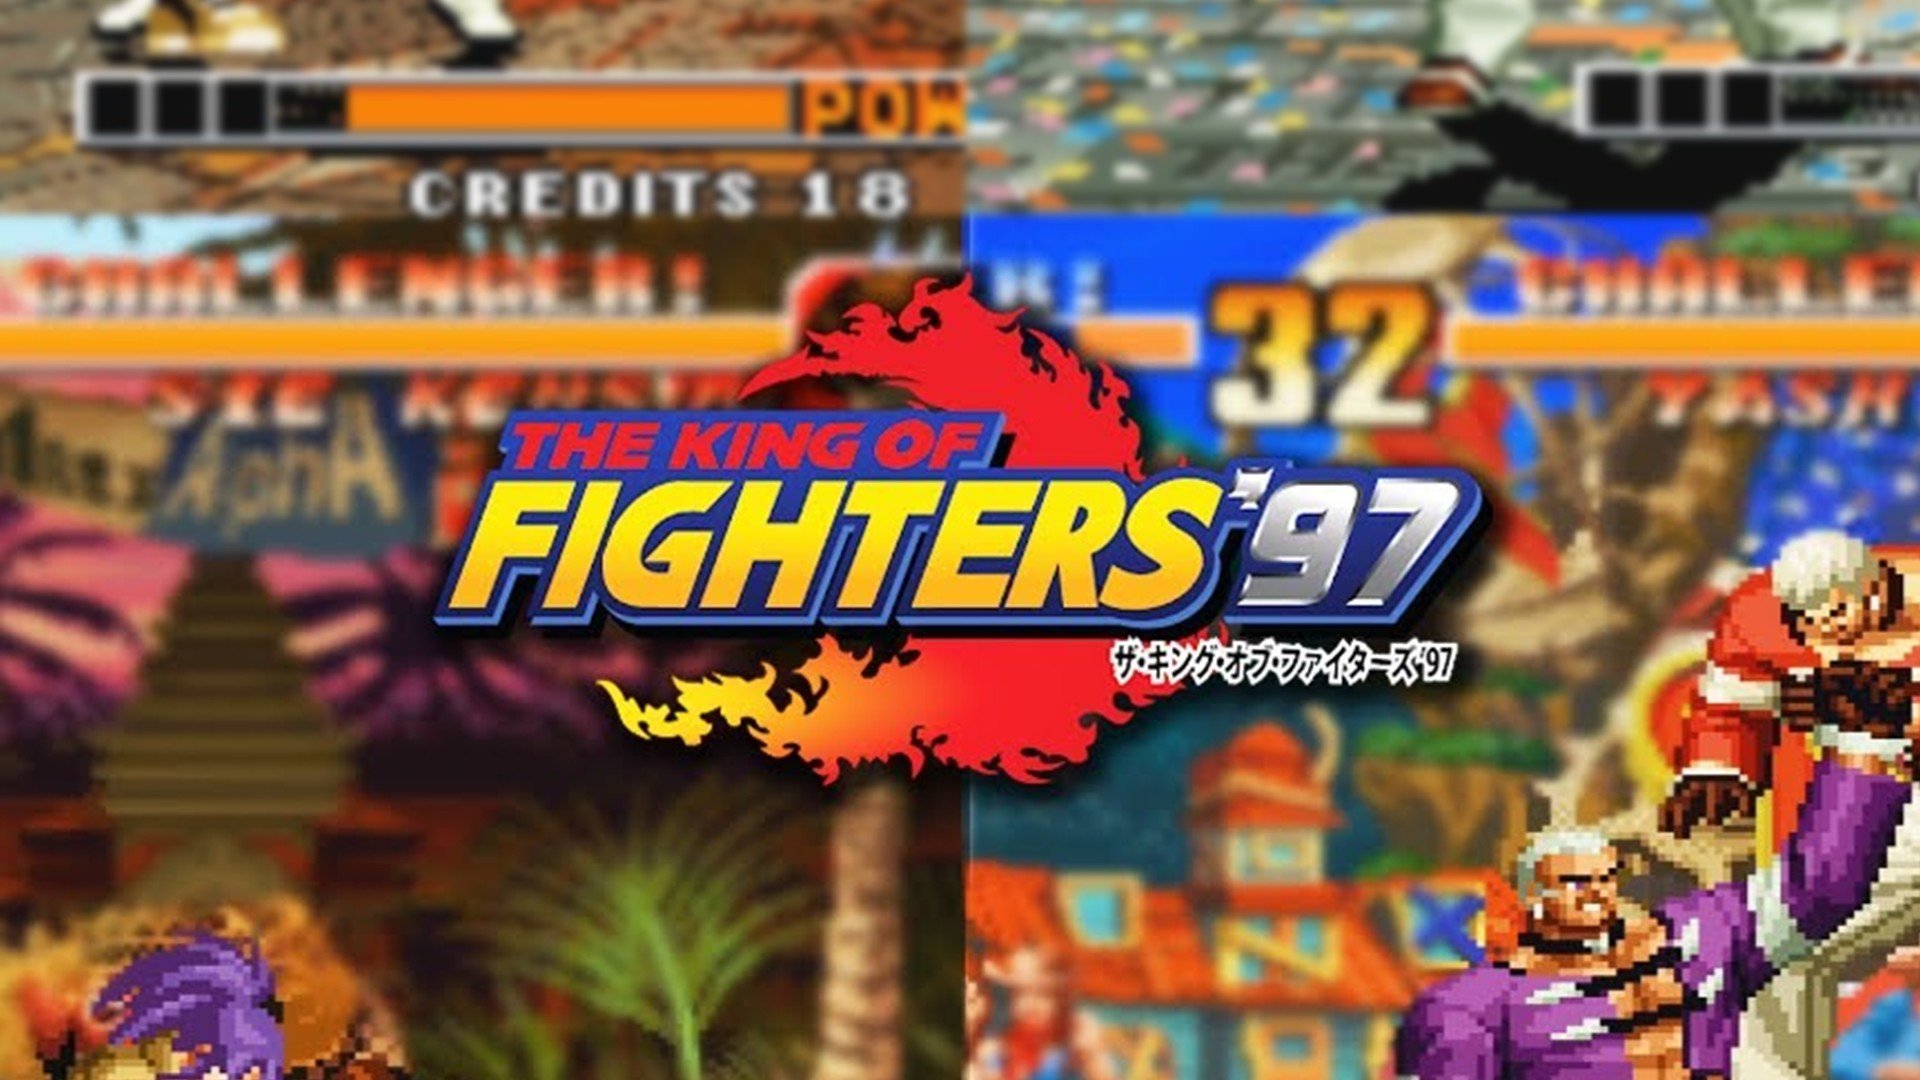 IA mostra como seriam os personagens de King of Fighters '97 com